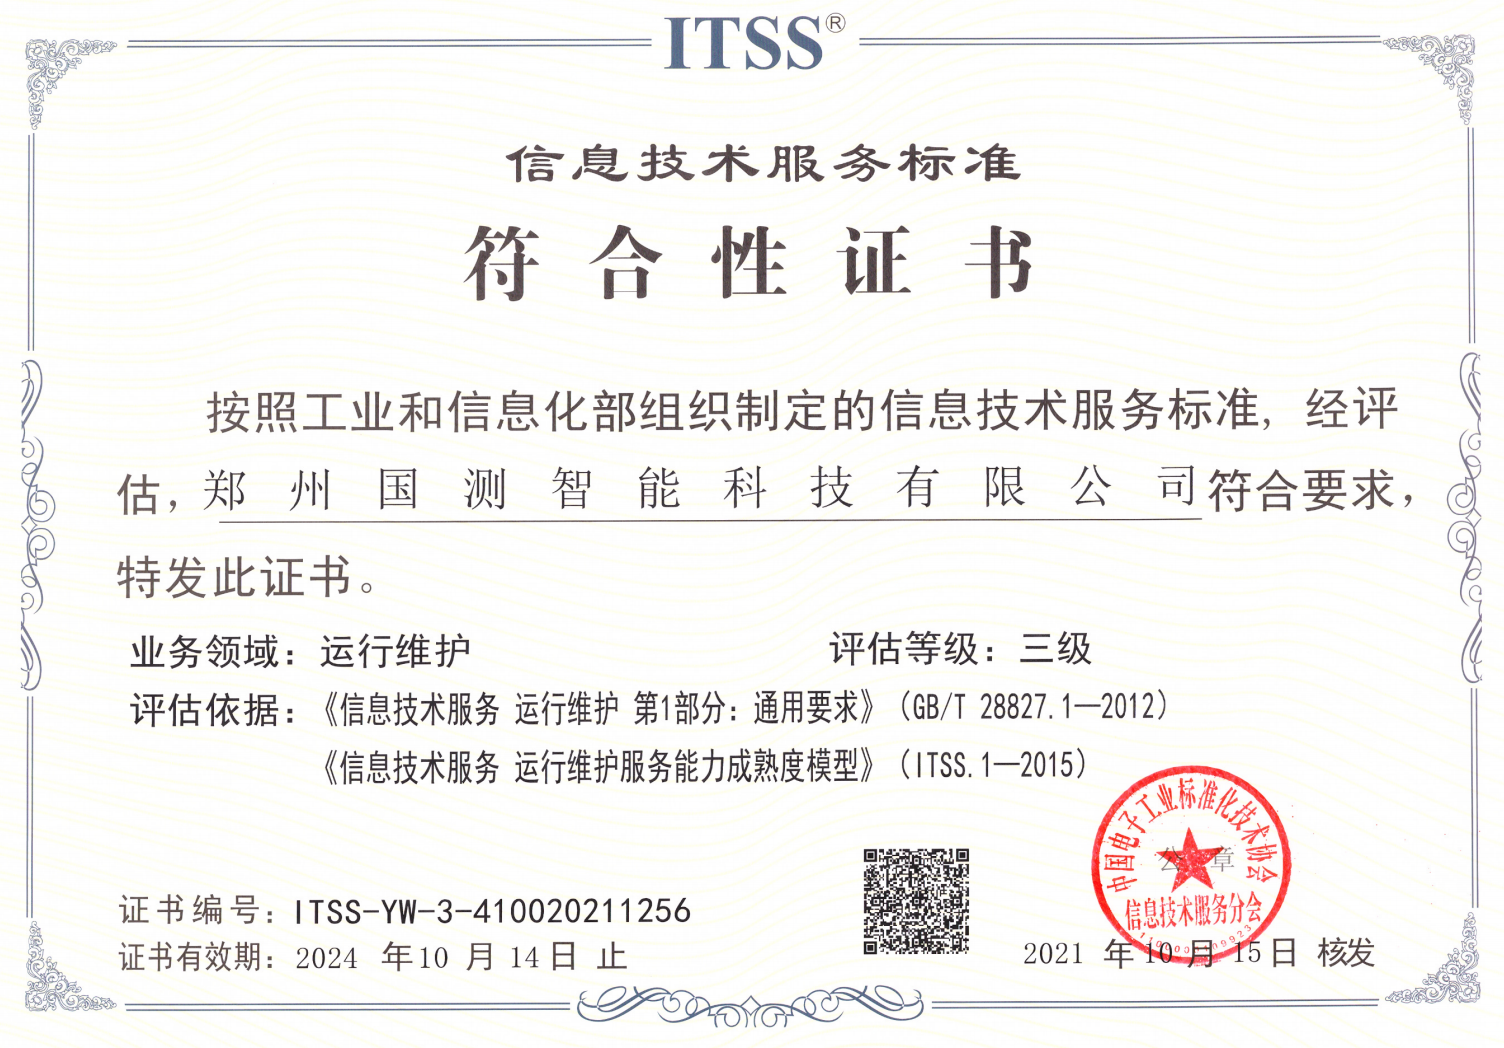 喜讯|伏安国电子公司获得信息技术服务标准符合性证书